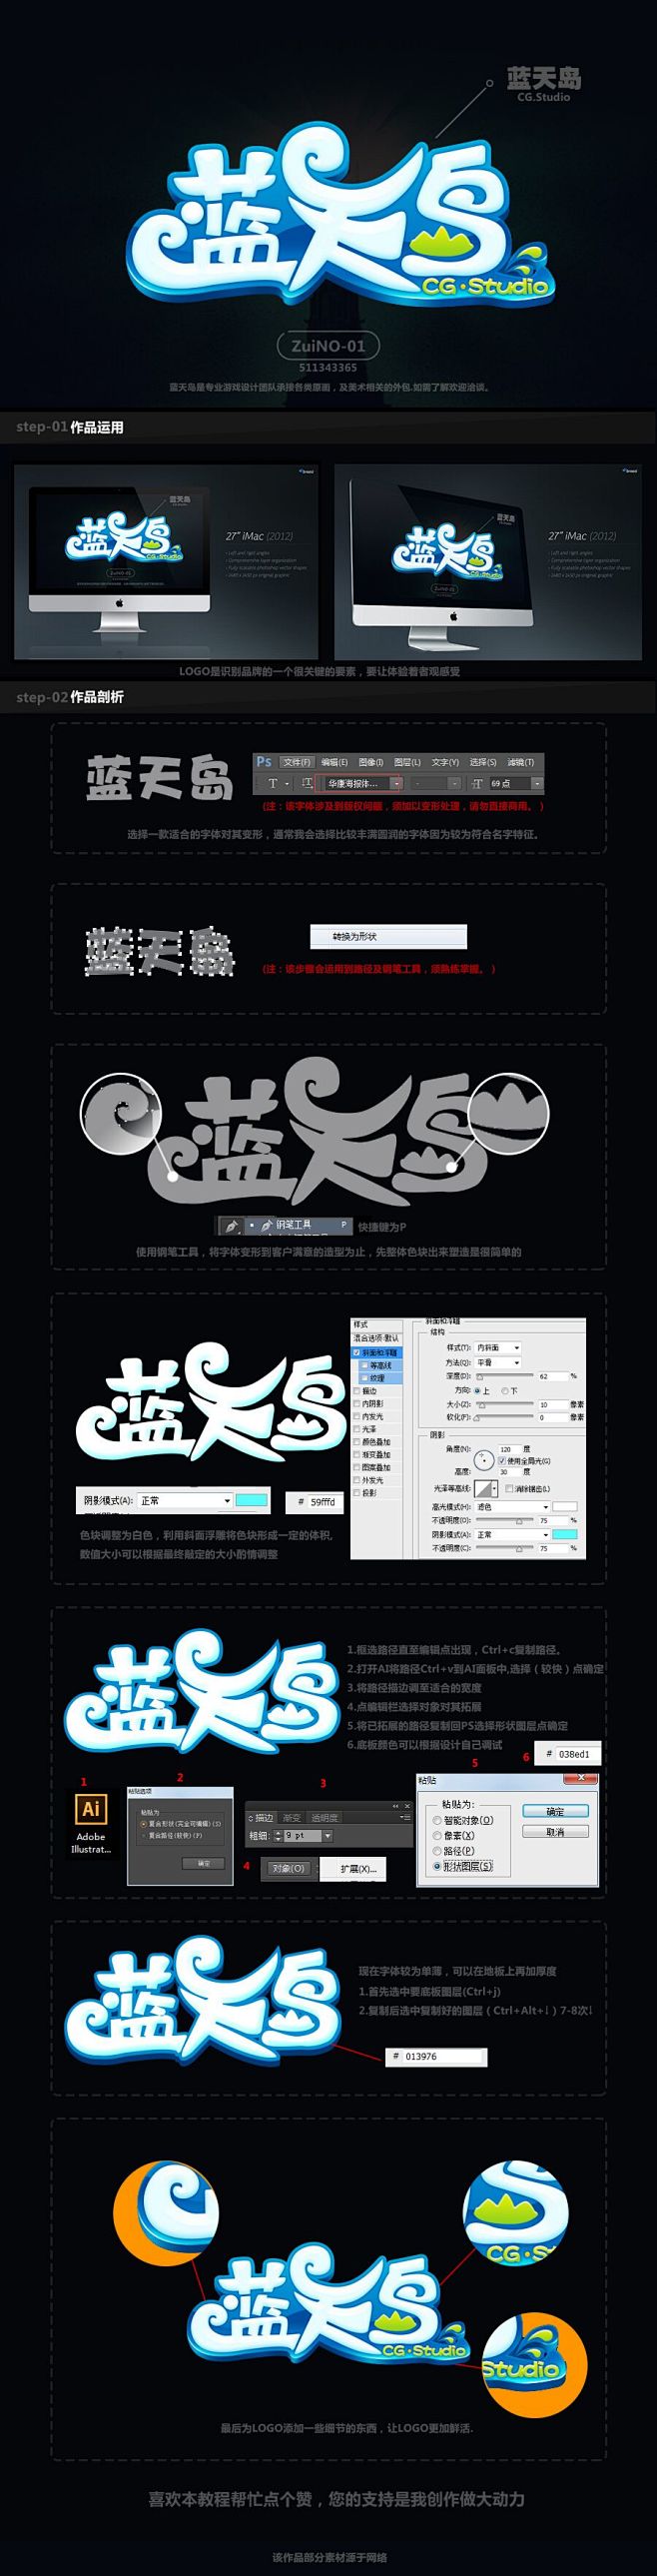 蓝天岛LOGO字体设计分享 |GAMEU...